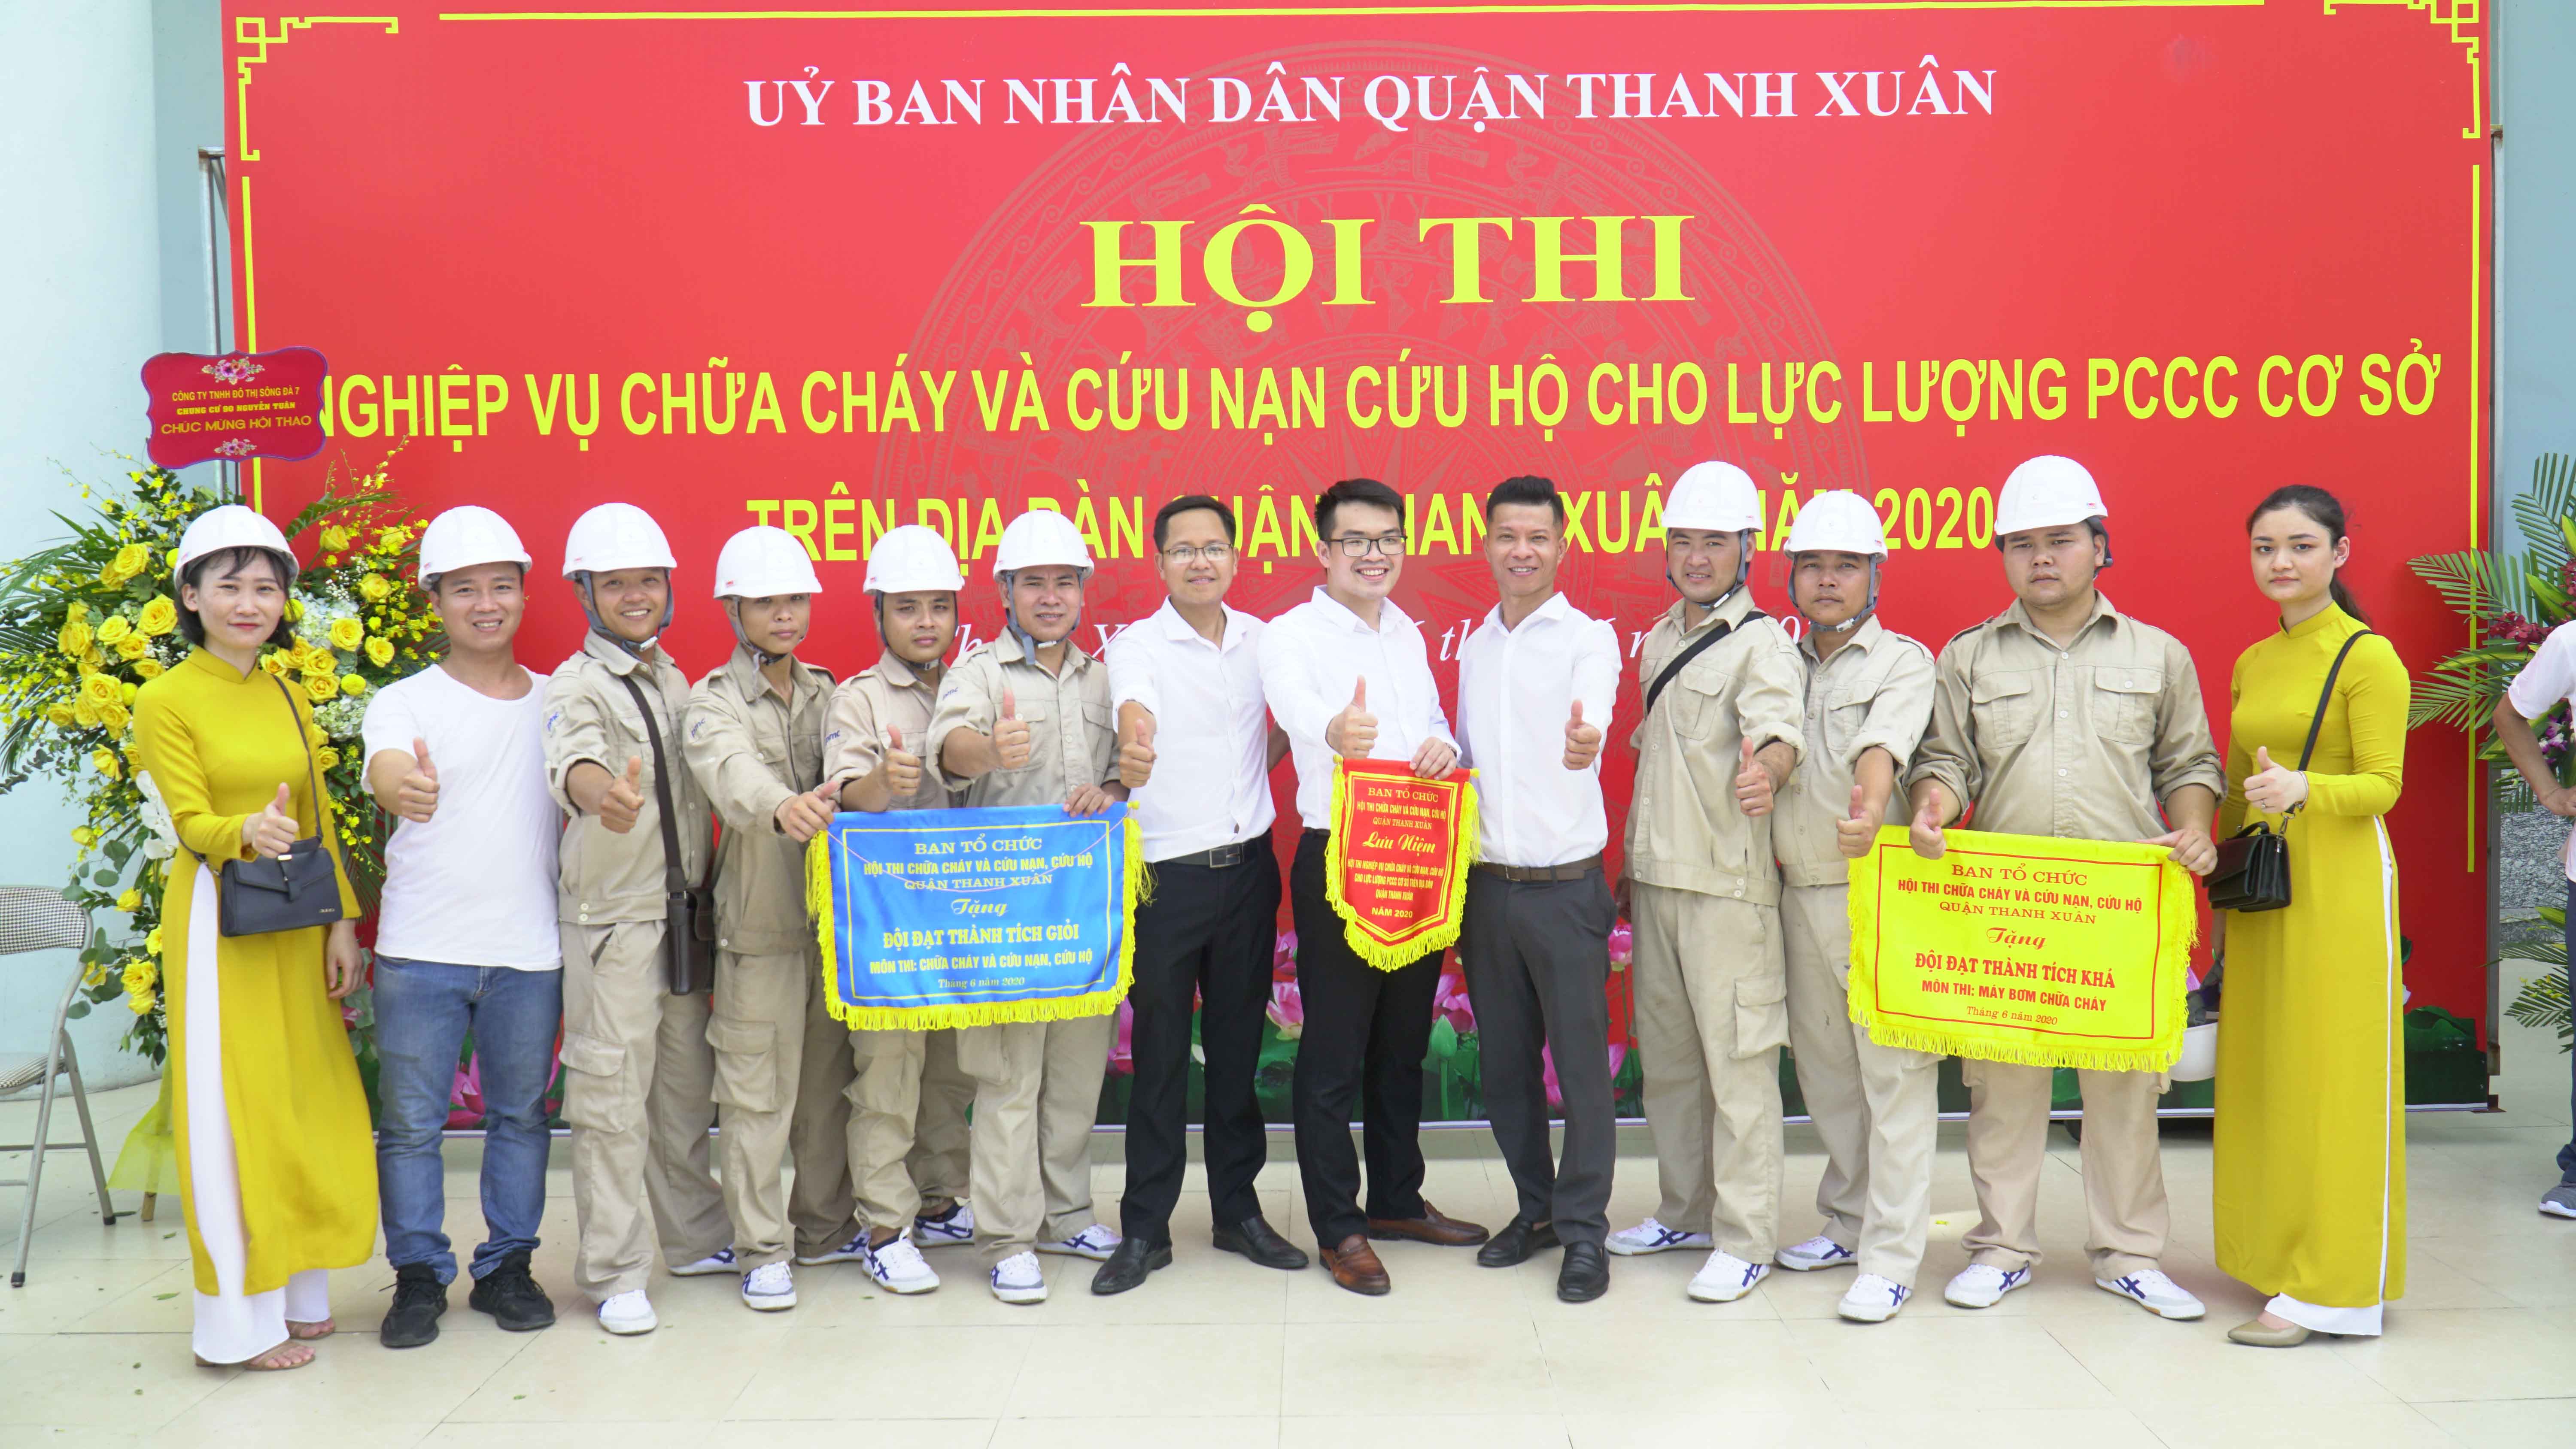 Five Star Kim Giang giành 2 giải cao tại hội thi Nghiệp vụ Chữa cháy và Cứu nạn cứu hộ